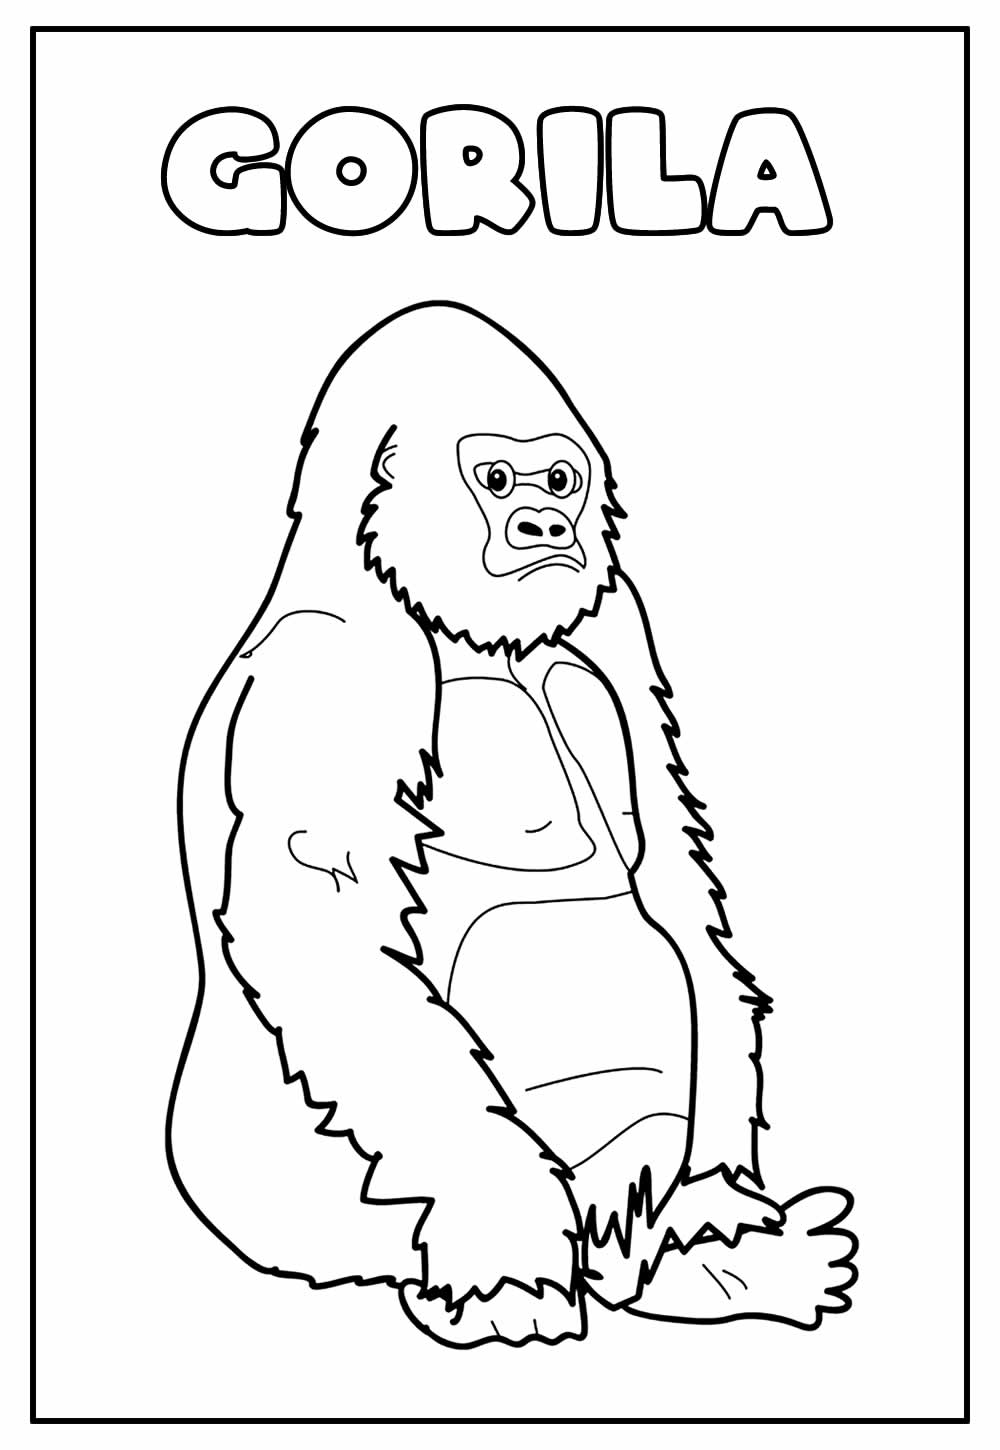 Desenho Educativo de Gorila